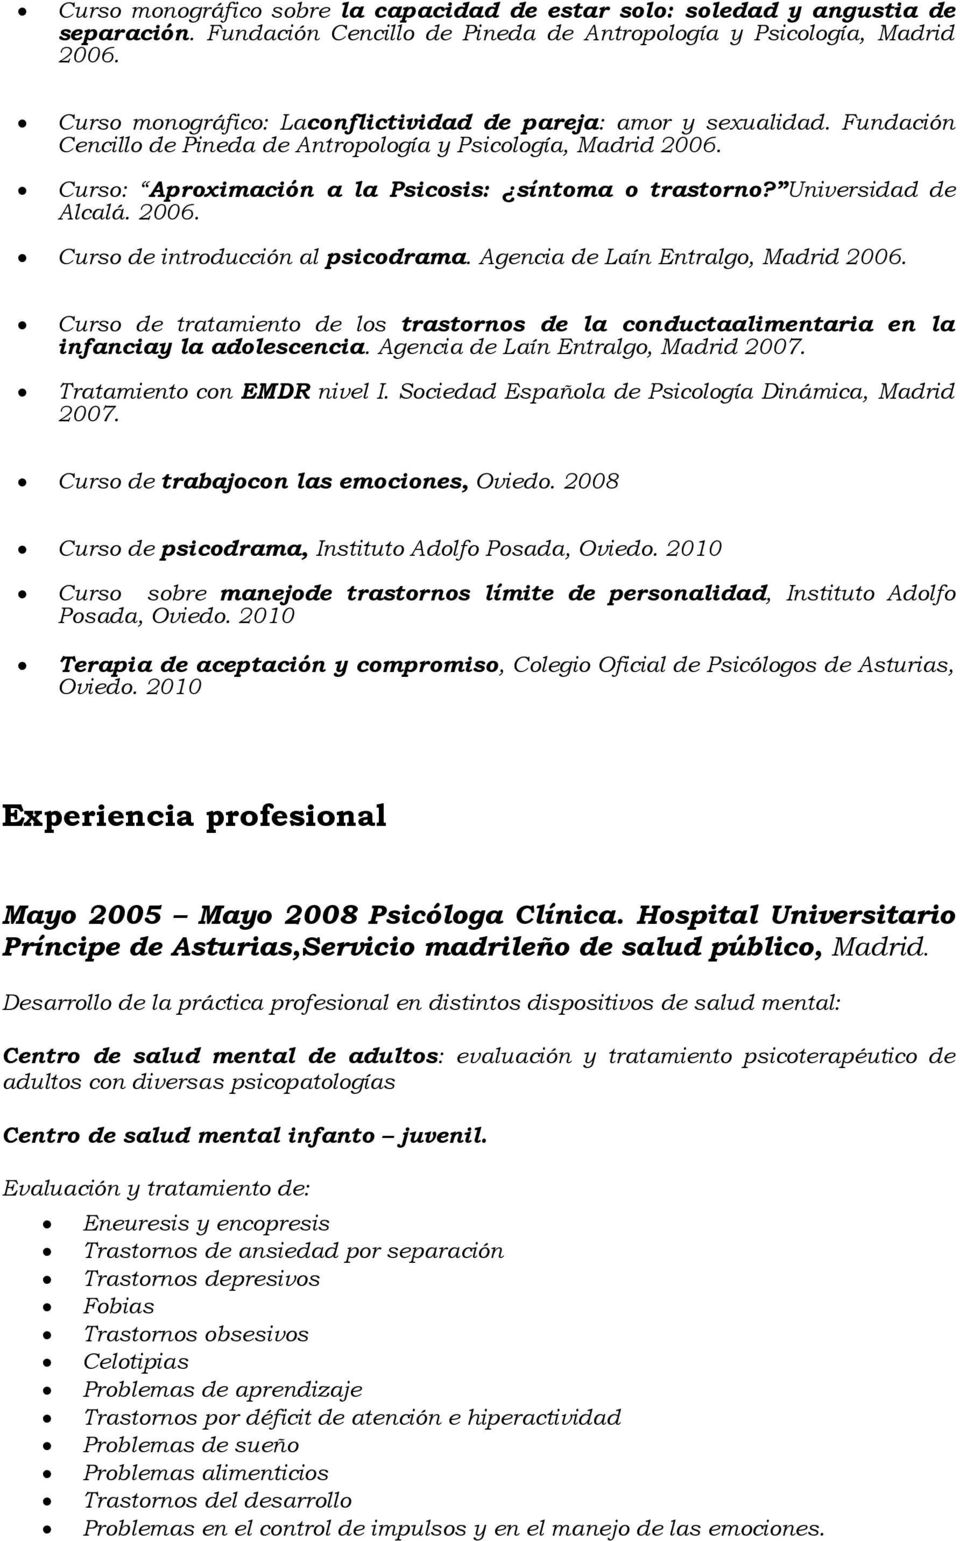 Universidad de Alcalá. 2006. Curso de introducción al psicodrama. Agencia de Laín Entralgo, Madrid 2006.